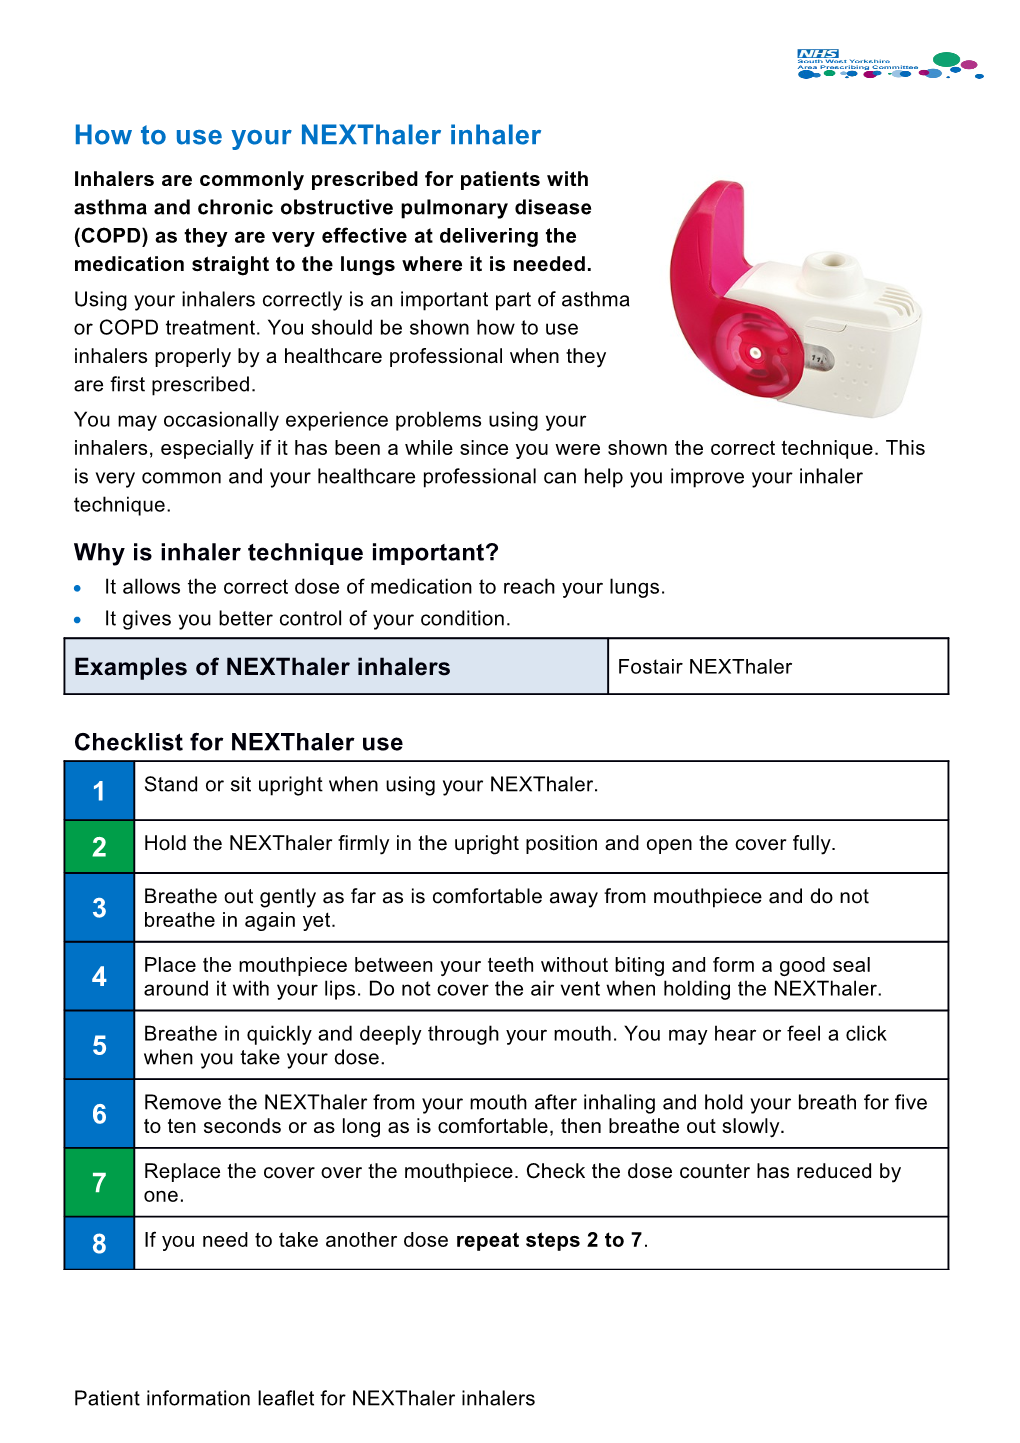 How to Use Your Nexthaler Inhaler